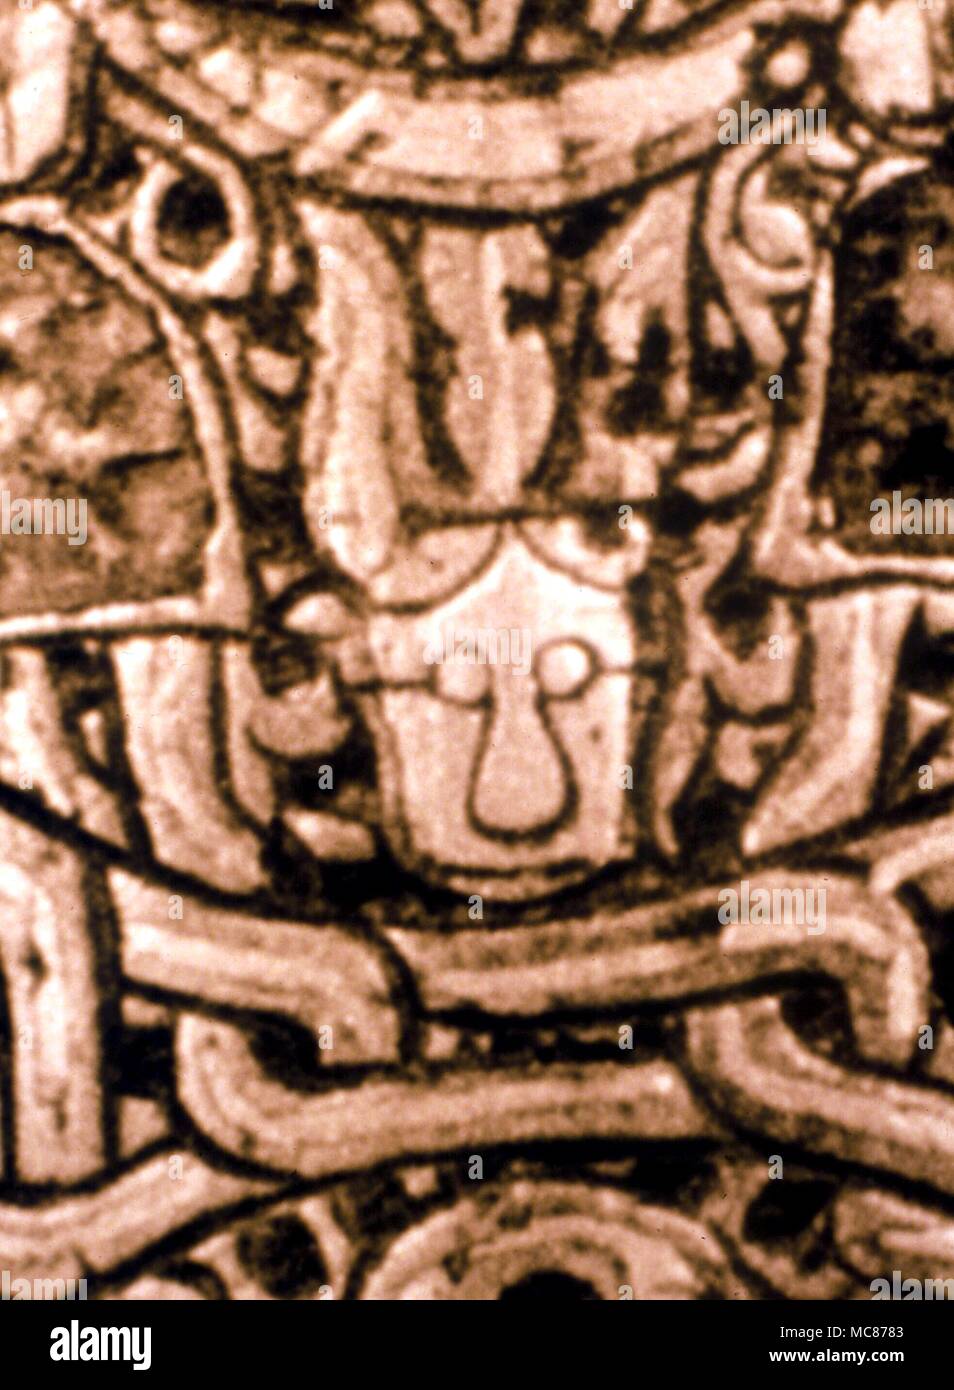 Astrologie - Arabisch Detail des Zawzahr Bildsprache, die sich auf die Mondknoten, im Lunar Abschnitt des 12. Jahrhunderts Arabisch Tintenfass, mit dem Zeichen der Schwanz des Drachen verwandelte sich in ein Gesicht. Dar al-Athar, Kuwait Stockfoto